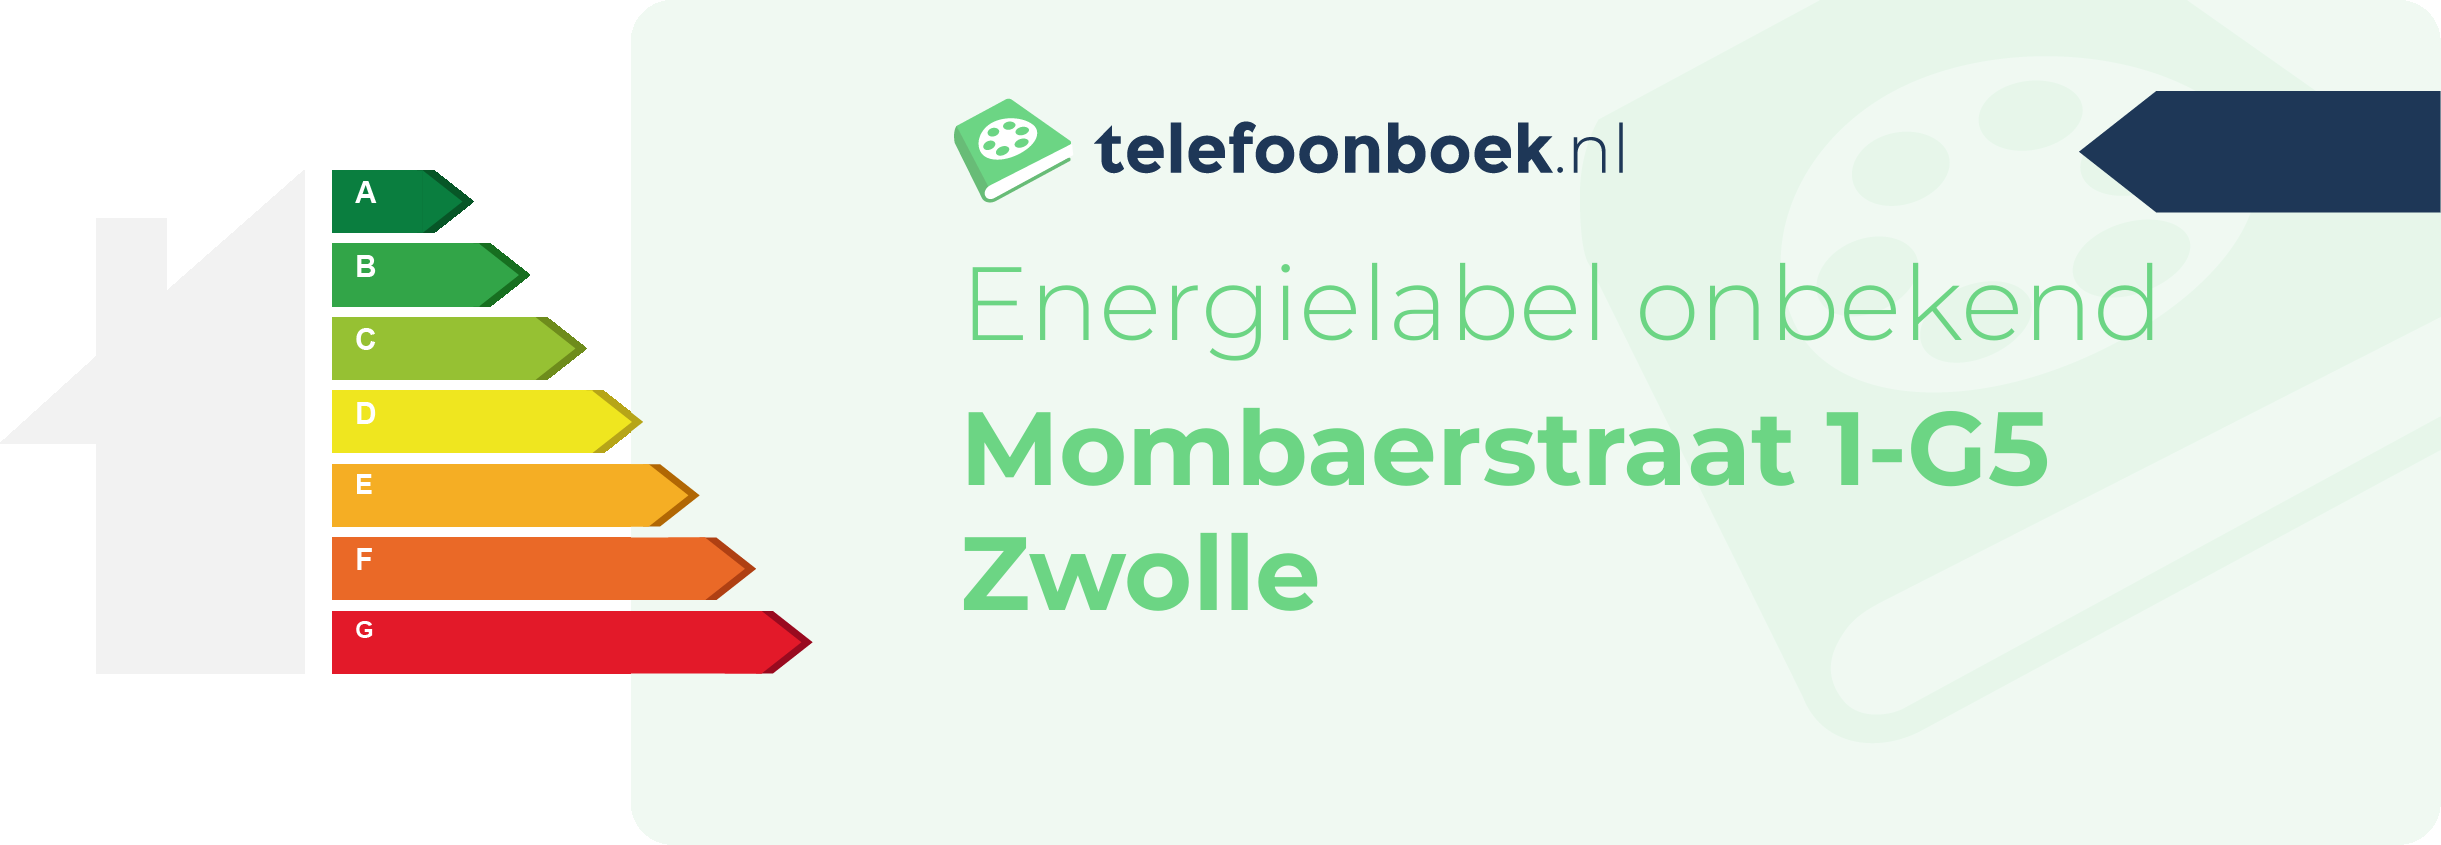 Energielabel Mombaerstraat 1-G5 Zwolle